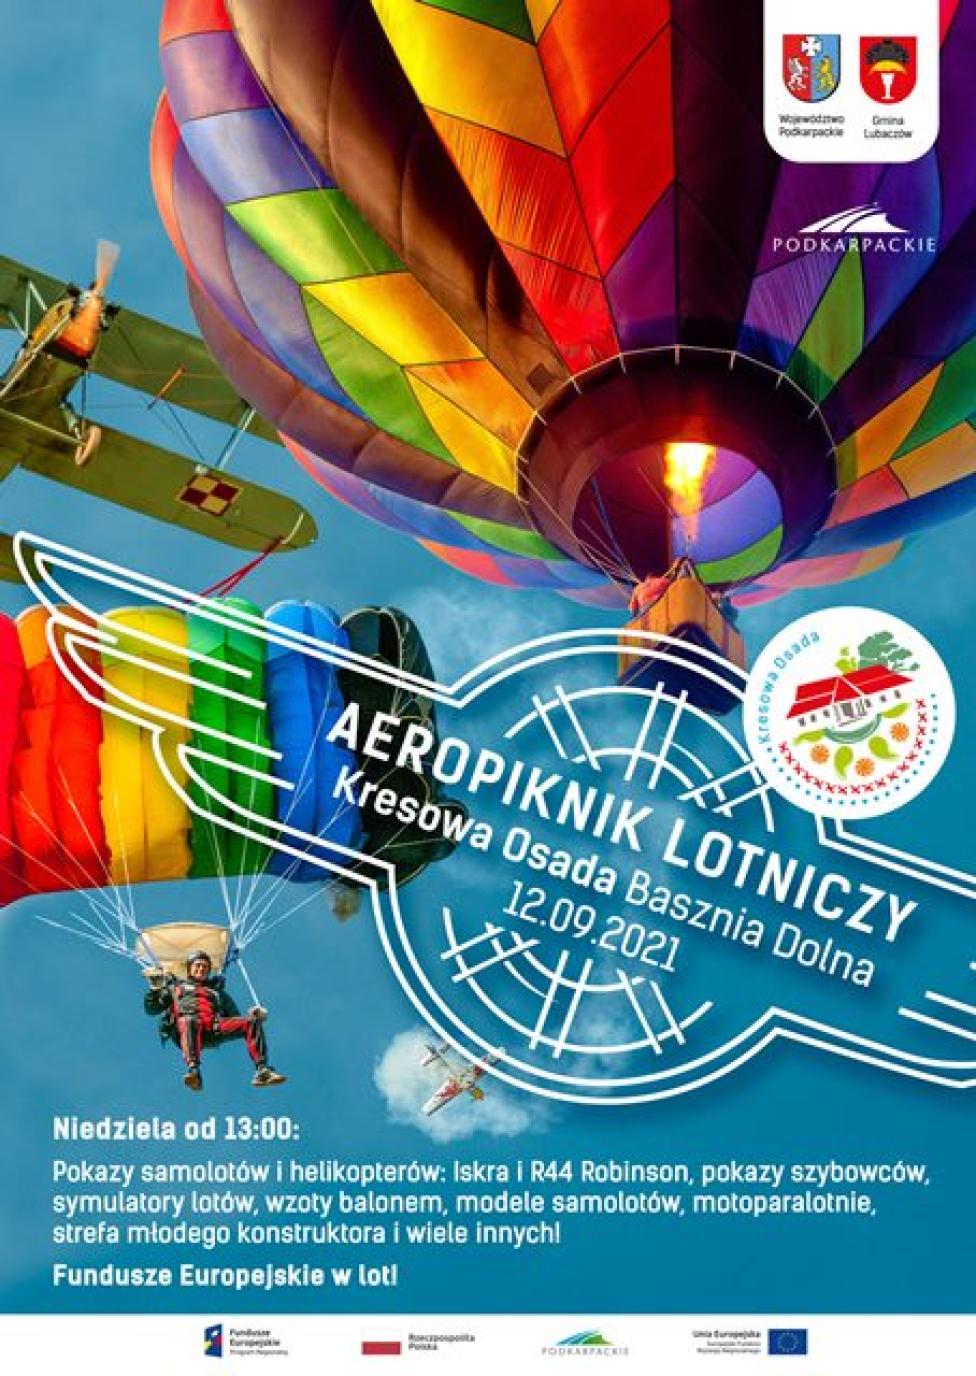 AeroPiknik Lotniczy w Kresowej Osadzie (fot. kresowaosada.pl)